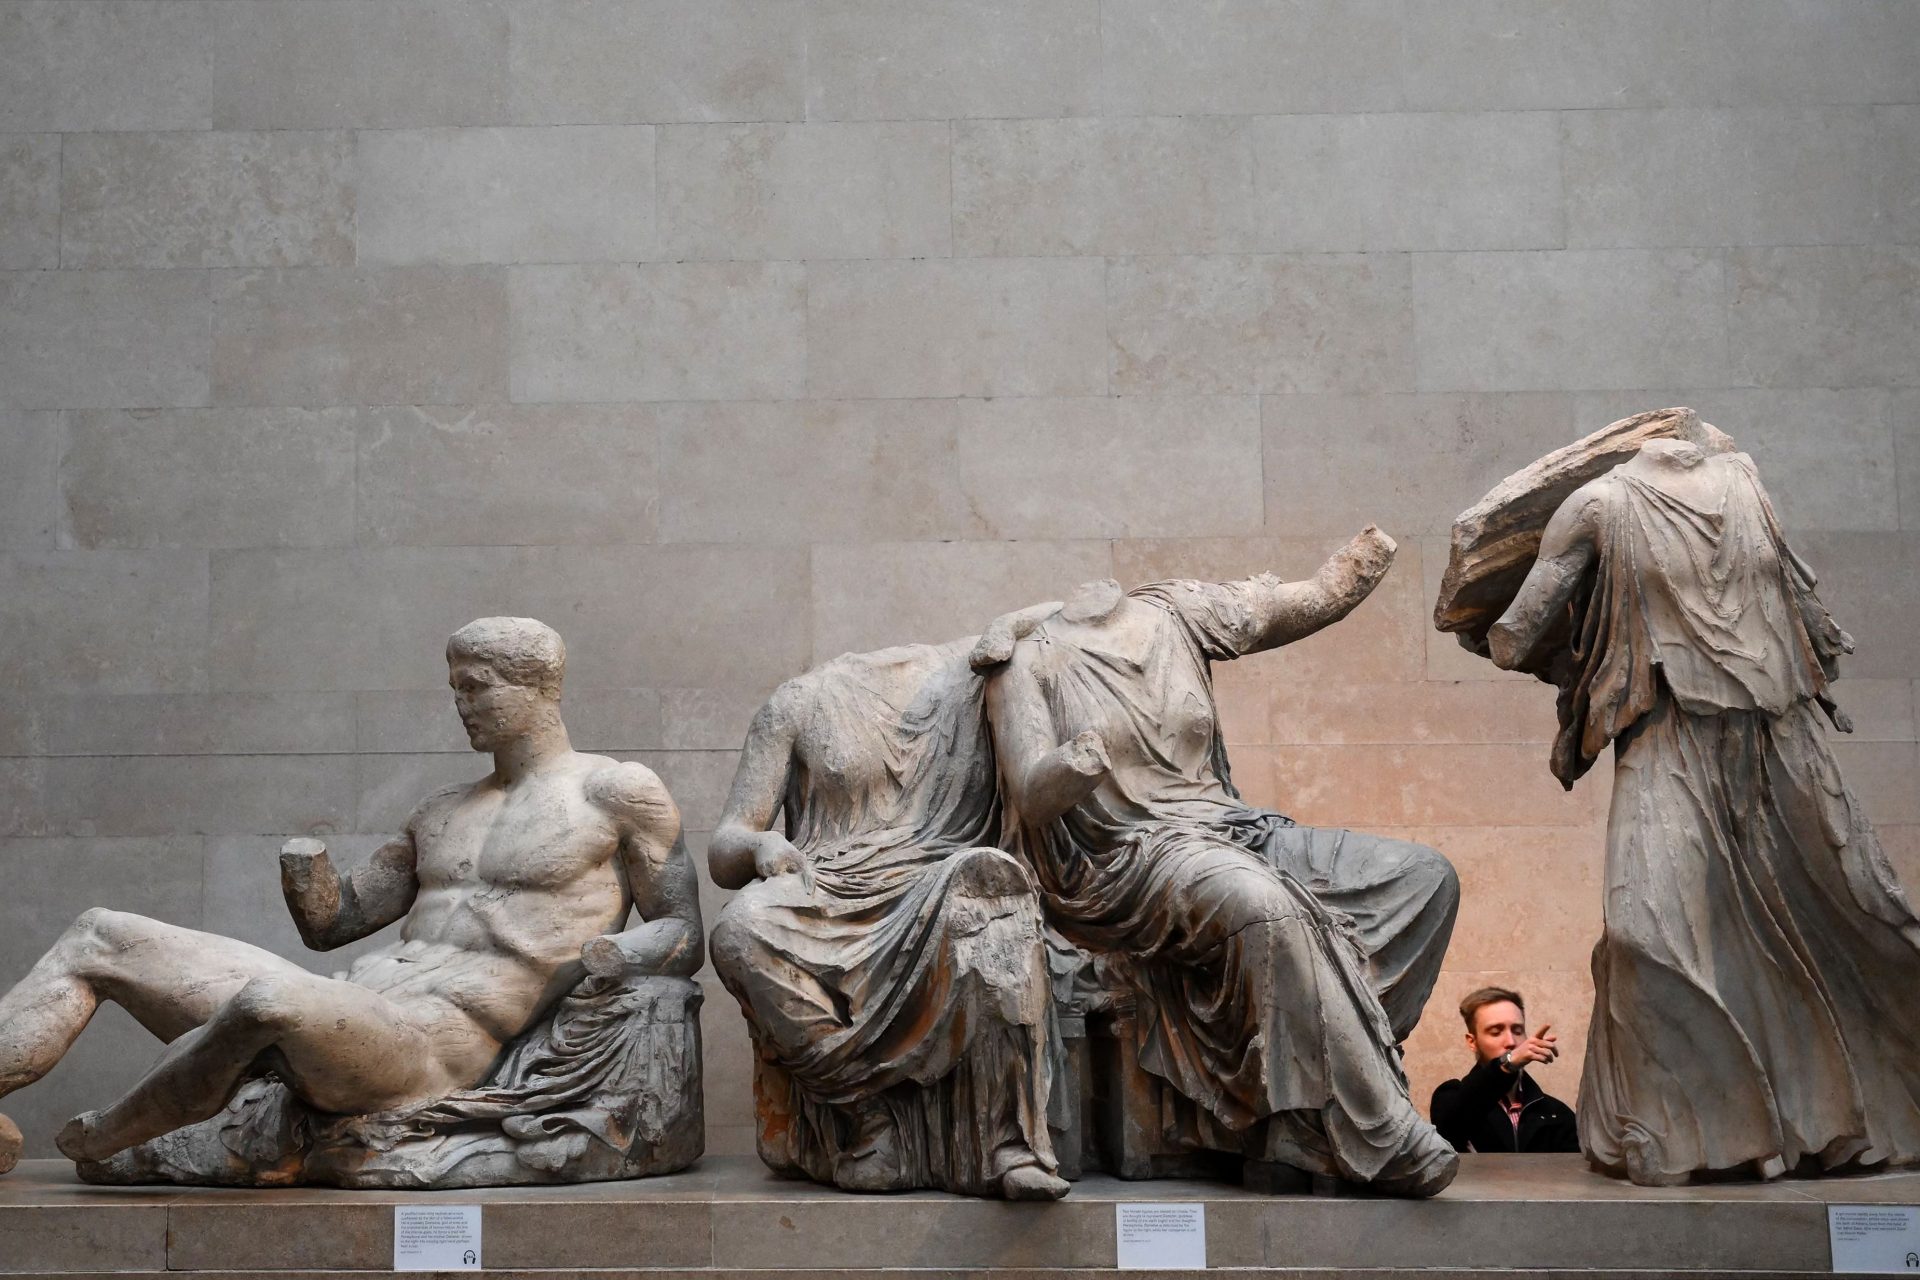 The Elgin Marbles/ Parthenon Sculptures